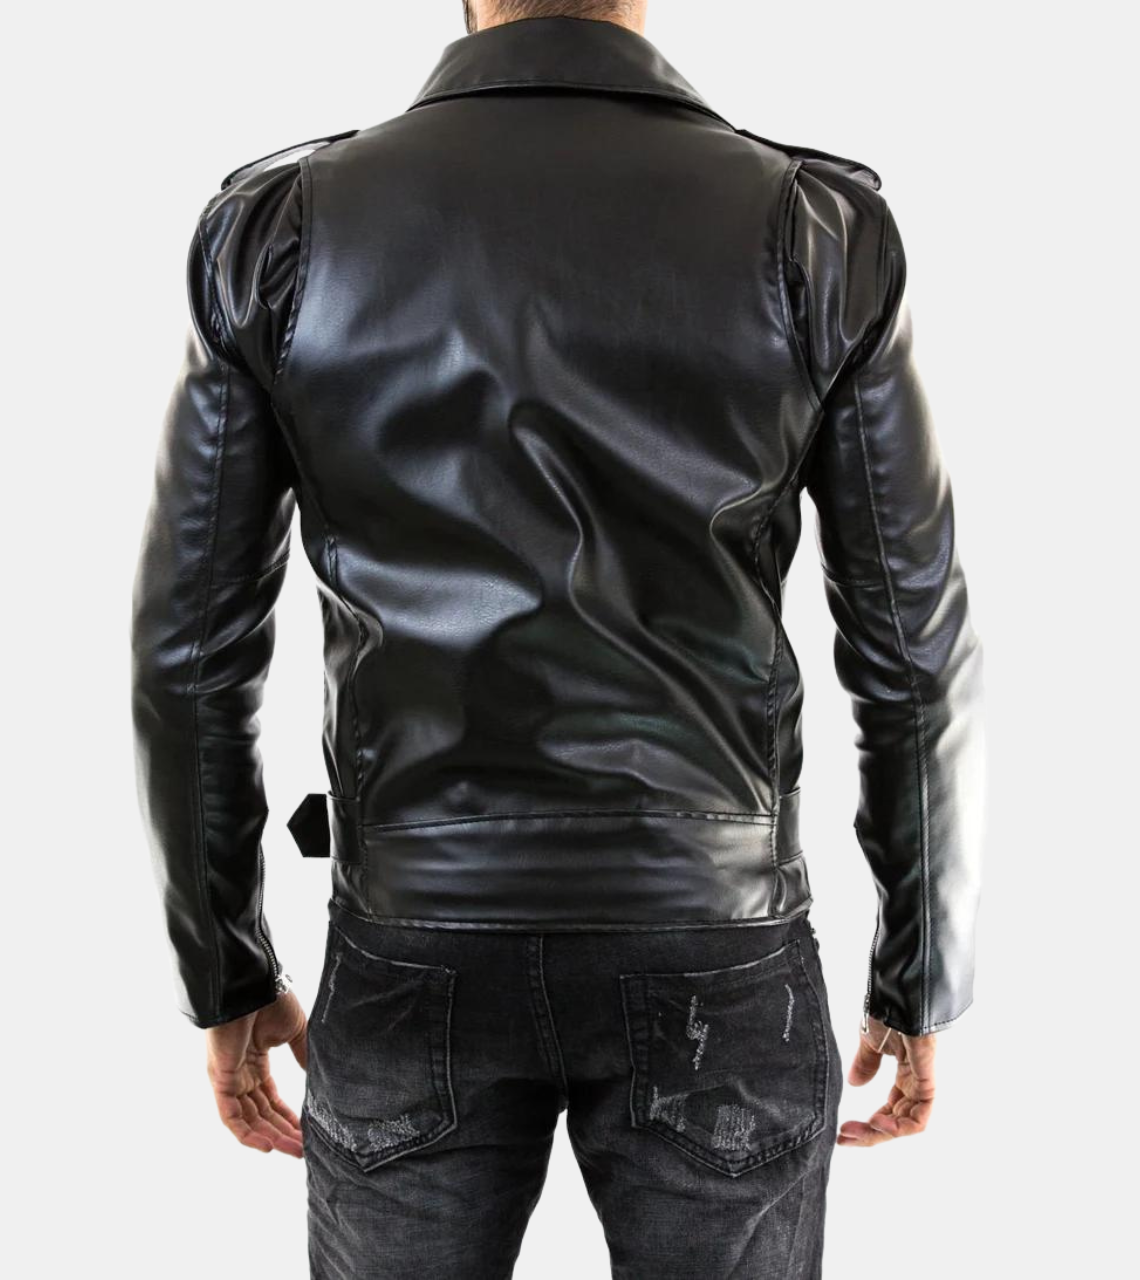 Sam Belted Biker Leather Jacket For Men's